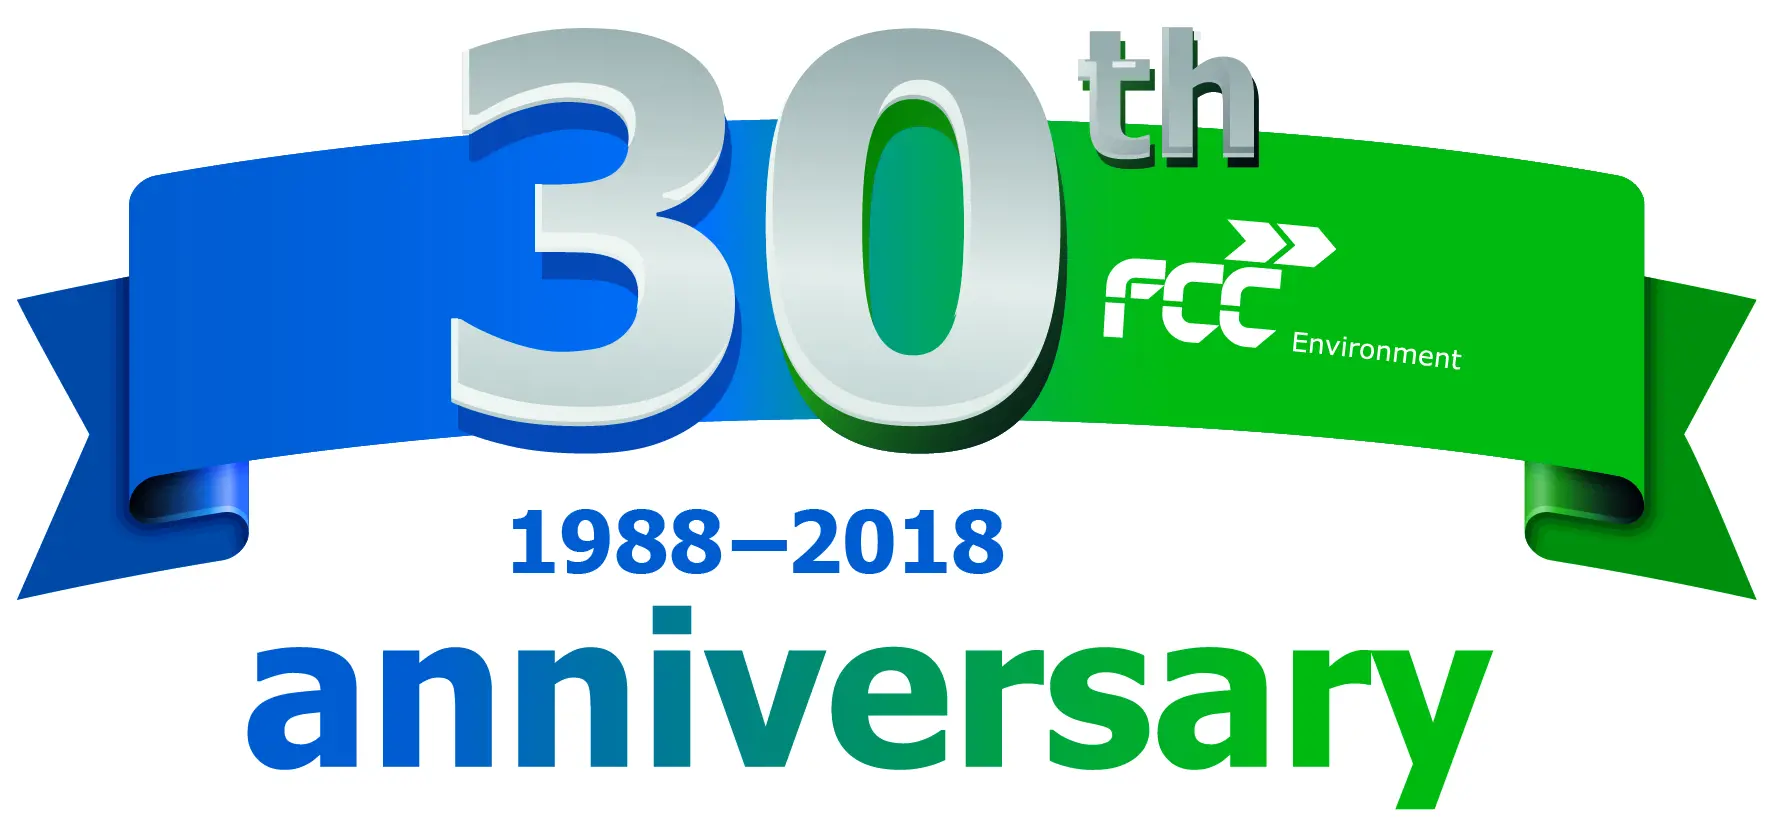 FCC Environment CEE grupa slavi 30. godišnjicu